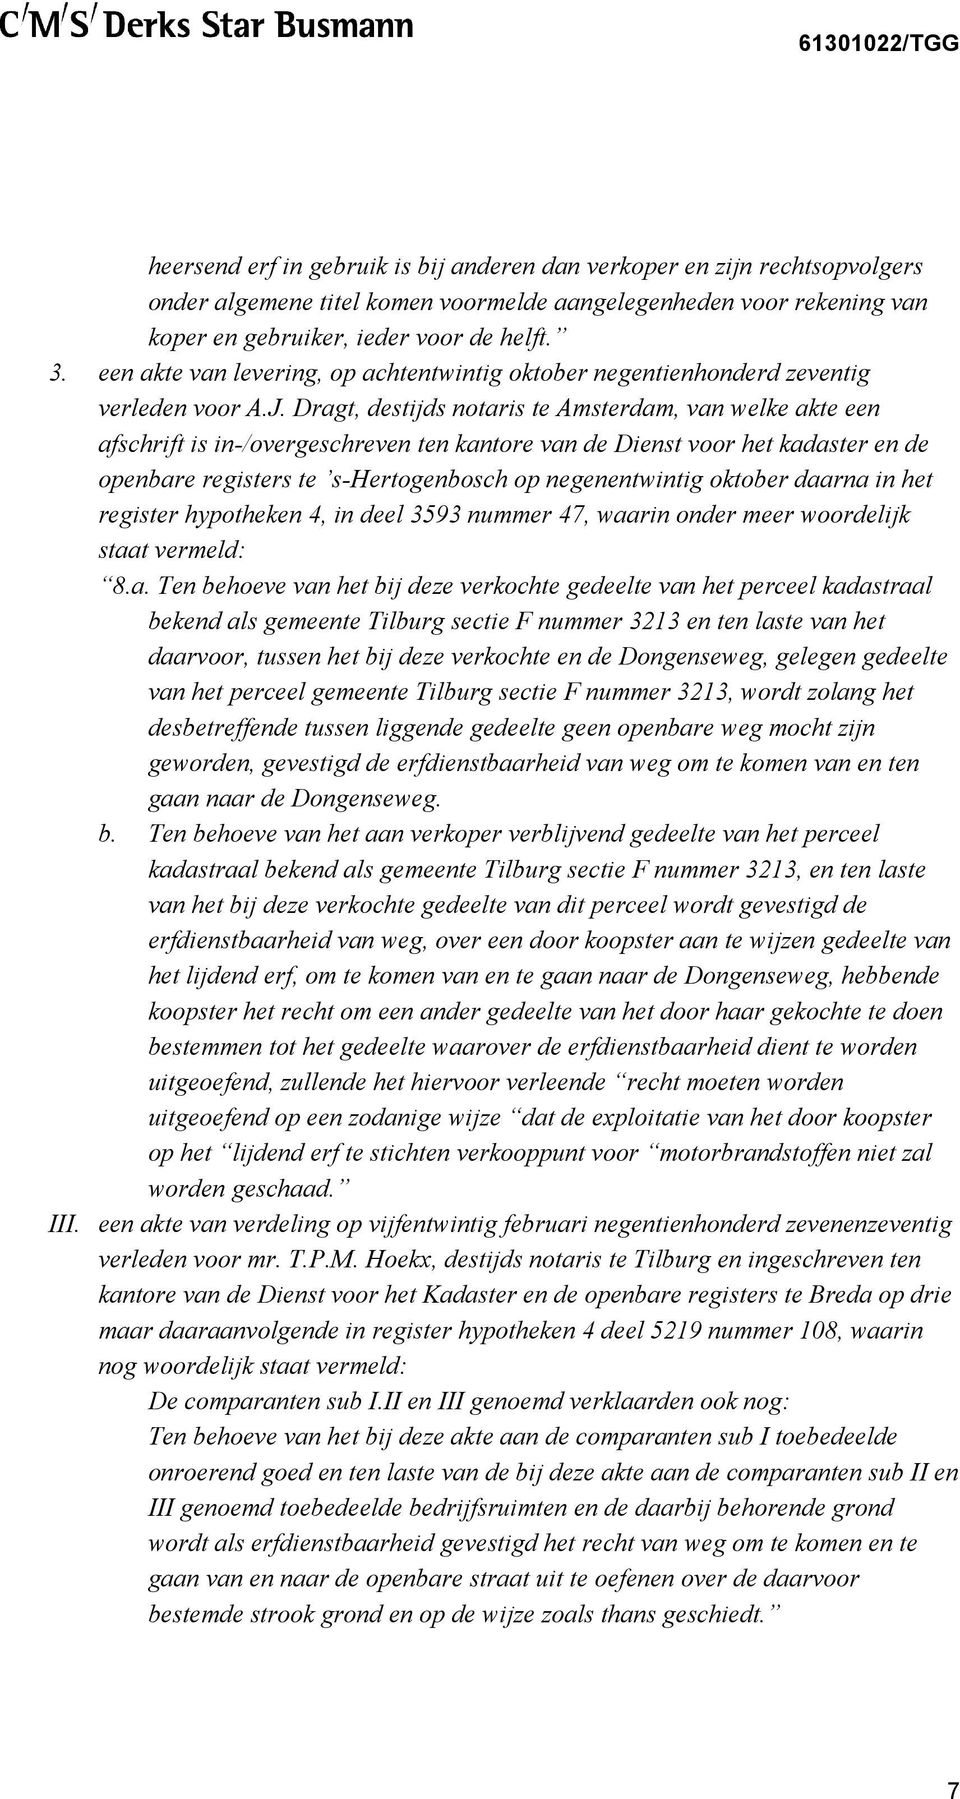 Dragt, destijds notaris te Amsterdam, van welke akte een afschrift is in-/overgeschreven ten kantore van de Dienst voor het kadaster en de openbare registers te s-hertogenbosch op negenentwintig